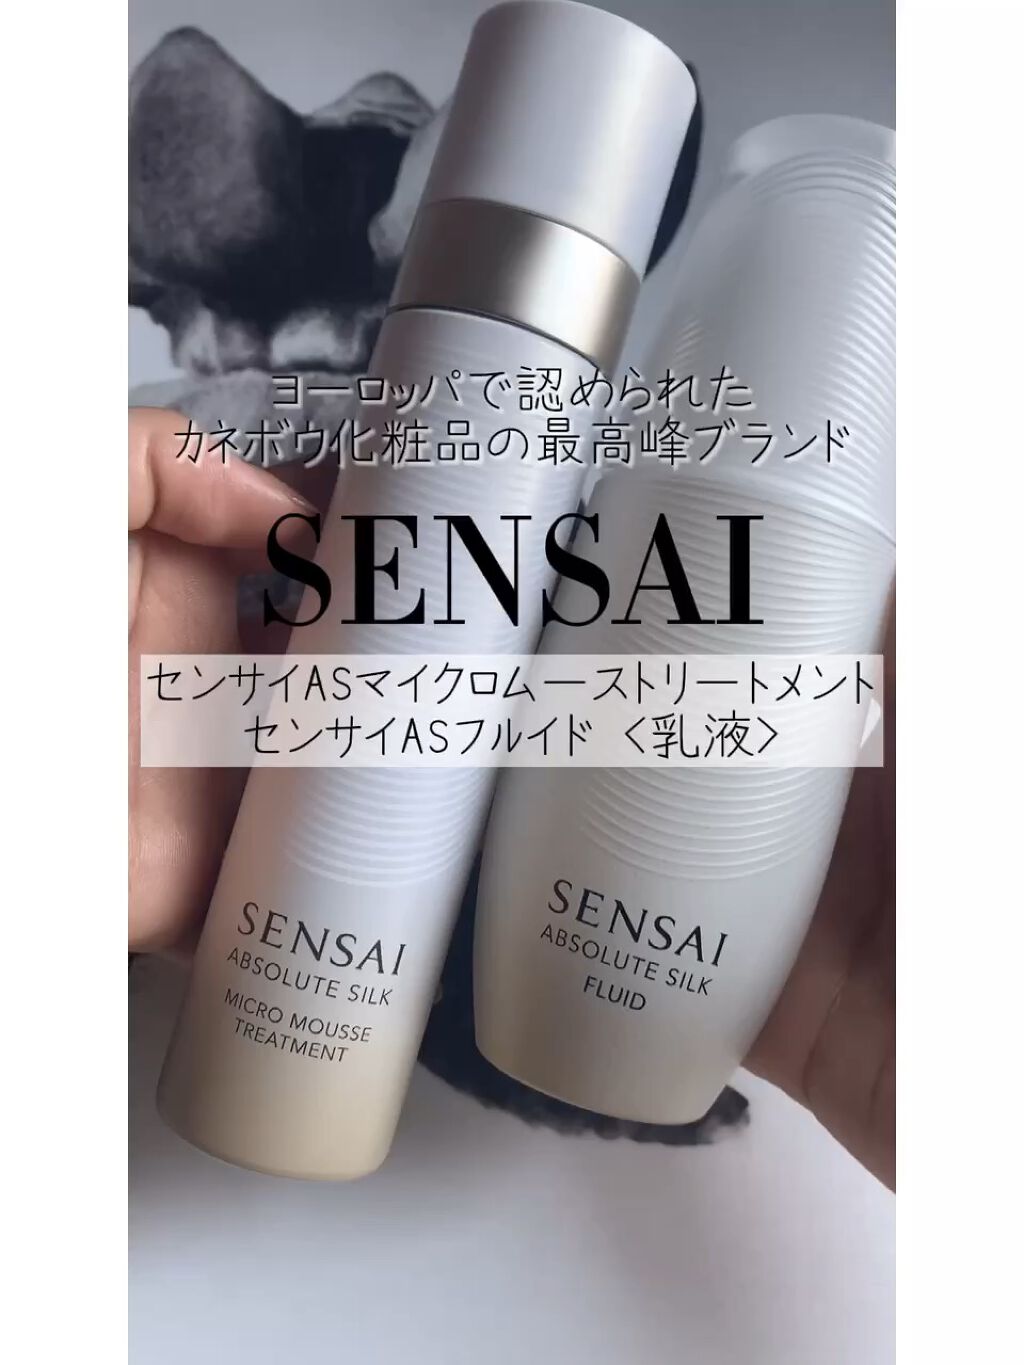 【新品未使用品】SENSAI 化粧水・乳液のセット